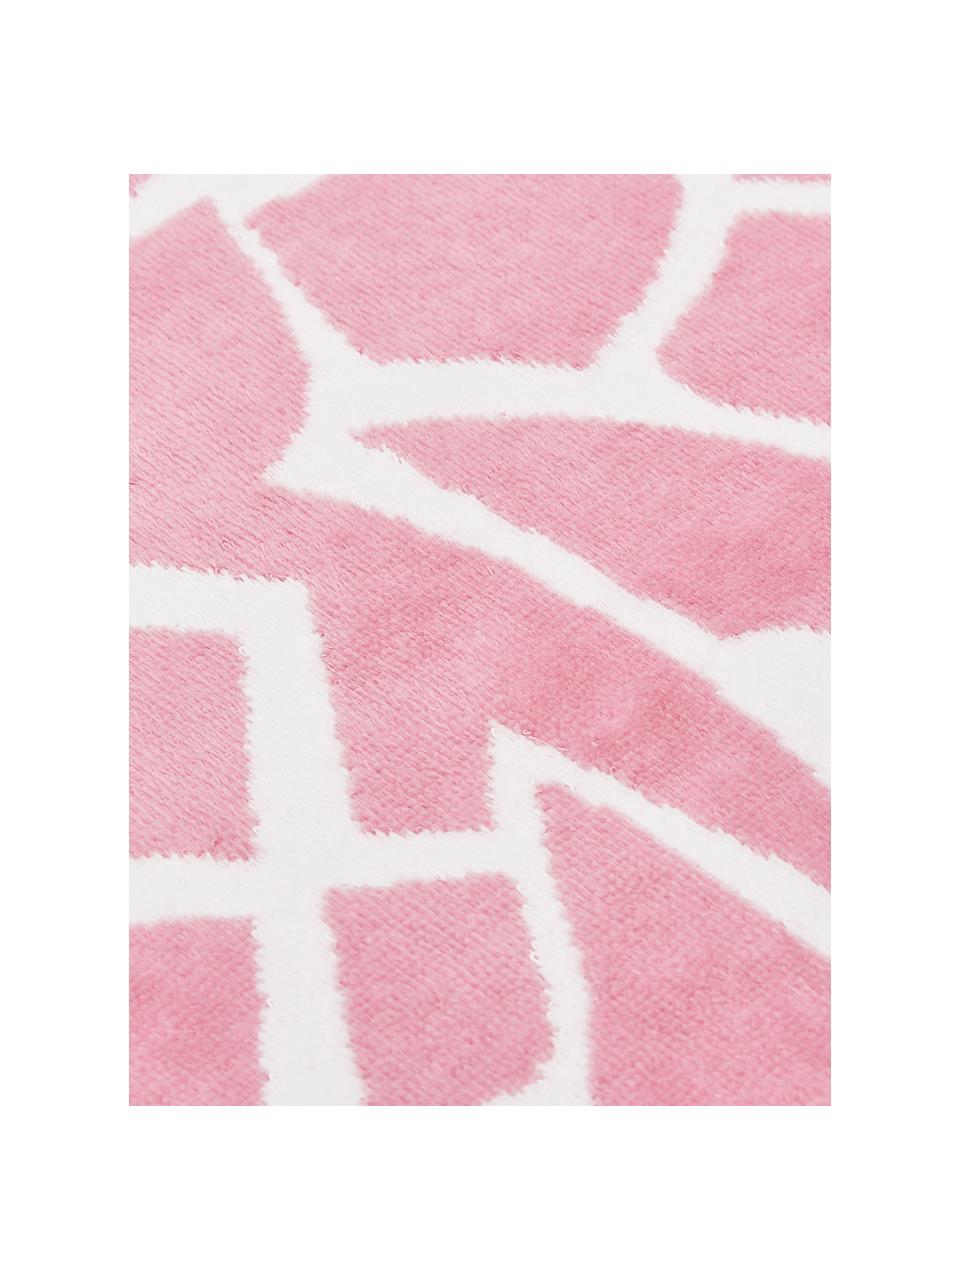 Strandlaken Anas, Katoen
Lichte kwaliteit 380 g/m², Roze, wit, 80 x 160 cm